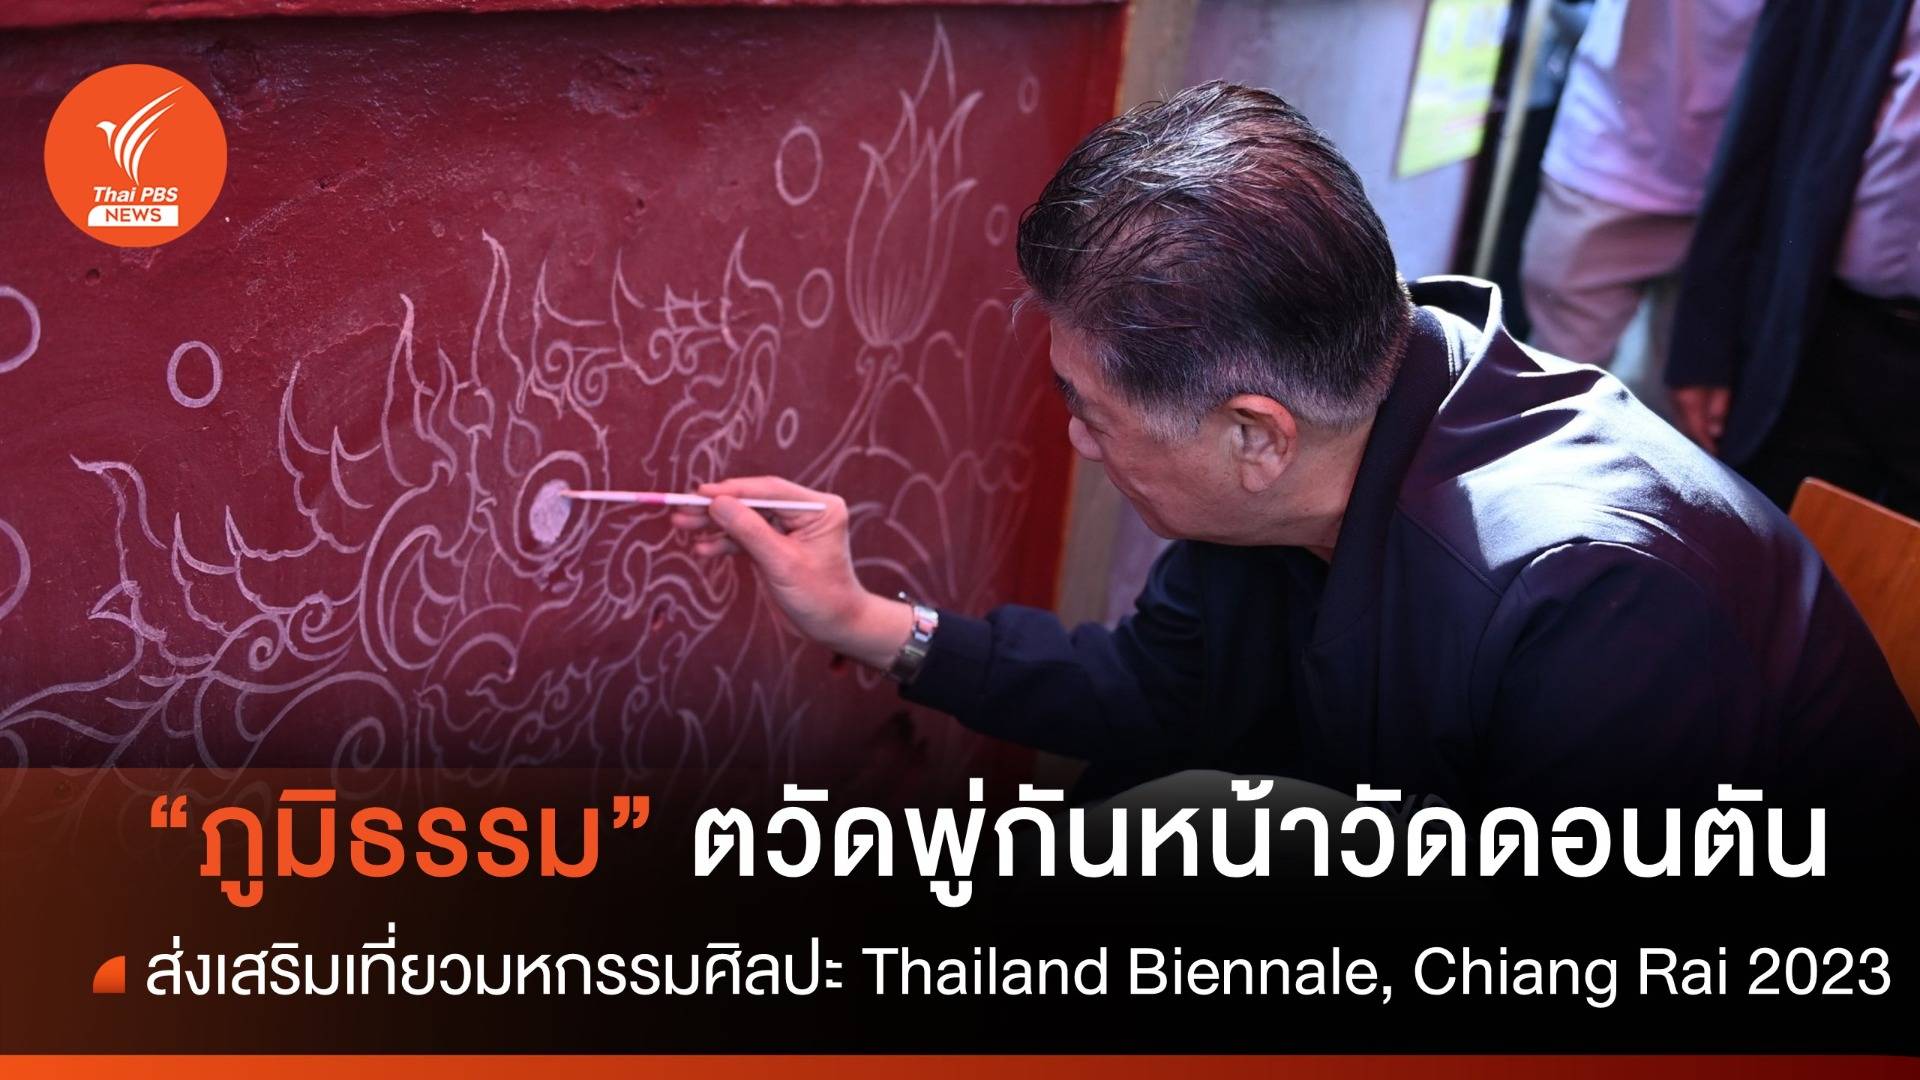 "ภูมิธรรม" โชว์ฝีมือตวัดพู่กันหน้าวัดดอนตัน ชวนเที่ยว Thailand Biennale, Chiang Rai 2023 